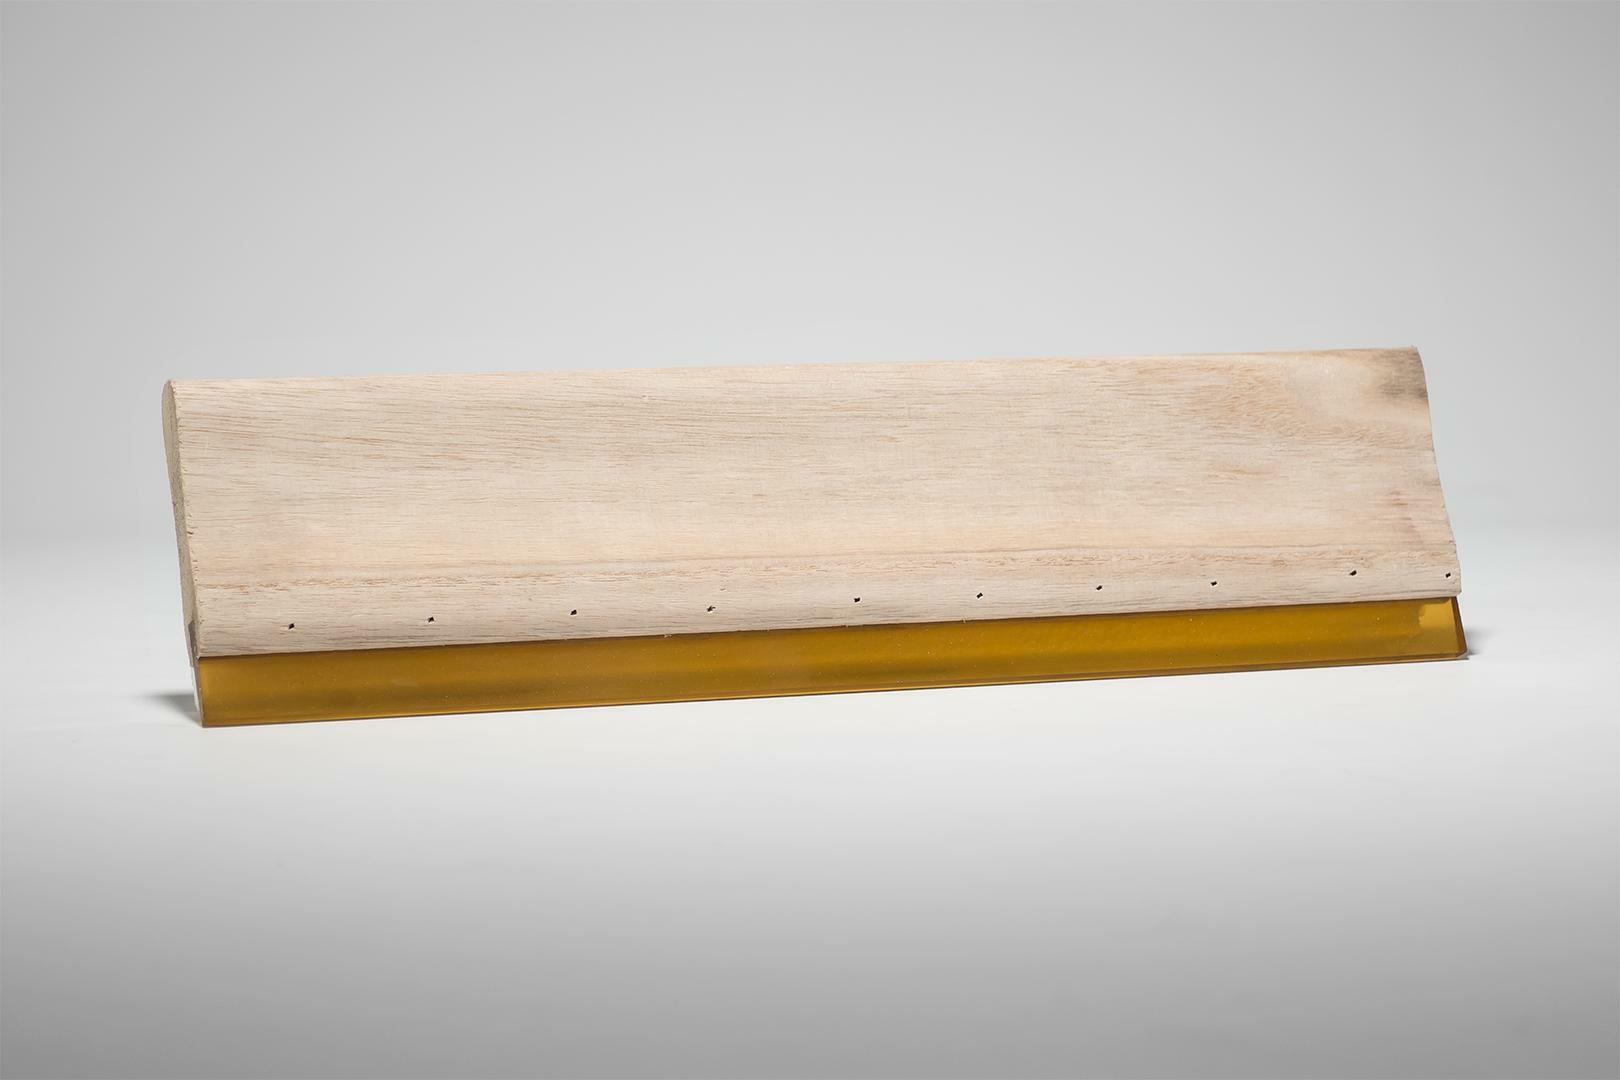 15cm Holz Rakel 70 Shore für textilen SiebdruckTextildruckSiebdruckrakel 